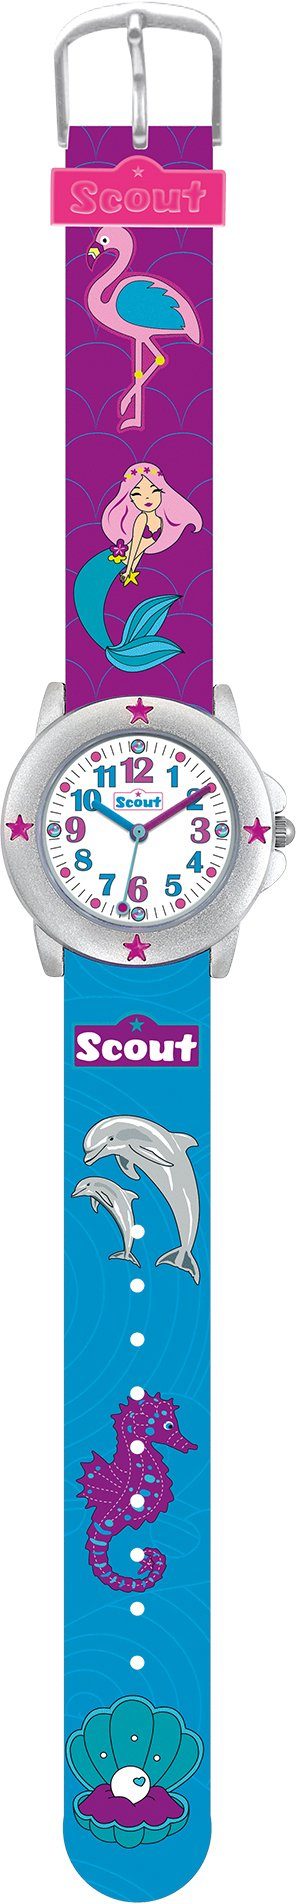 Scout Quarzuhr Star Kids, Muschel-Delphin-,Meerjungfraumotiv, auch 280393023, ideal Geschenk als